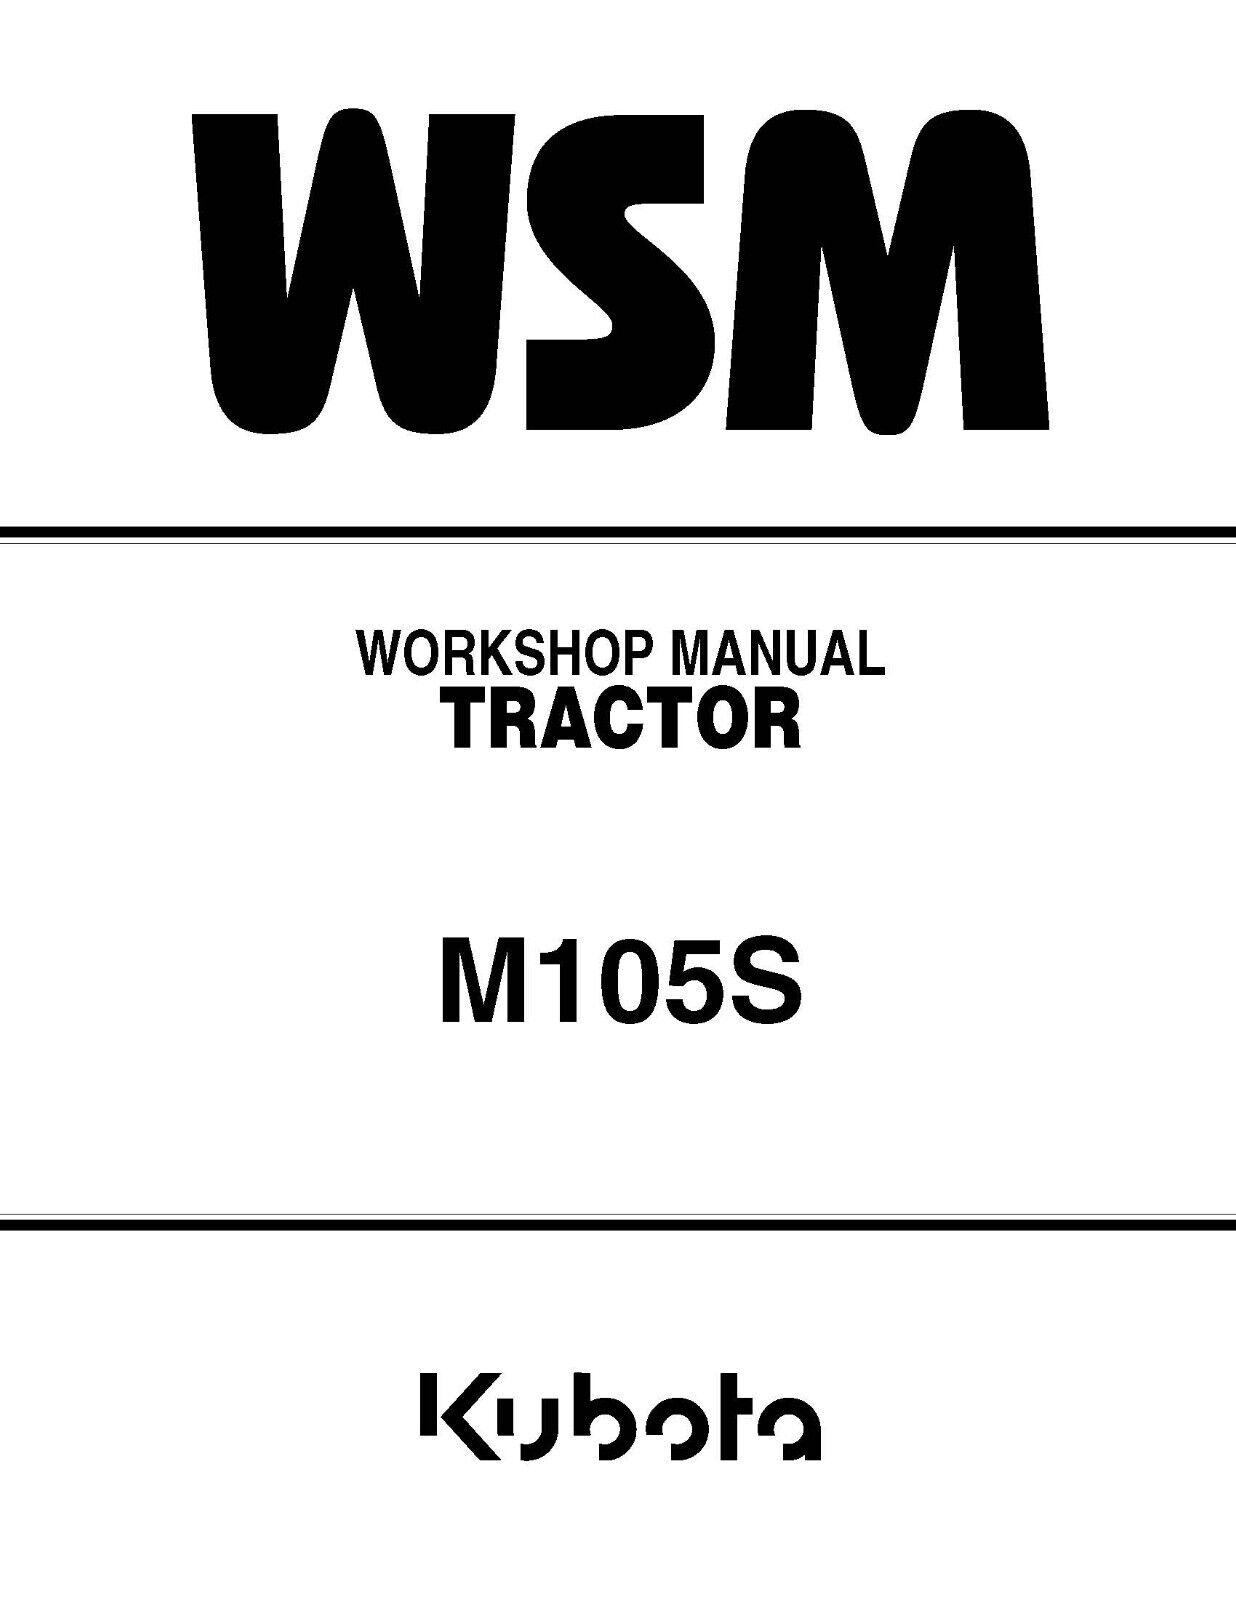 Kubota M105S Tractor Workshop Manual Service Repair